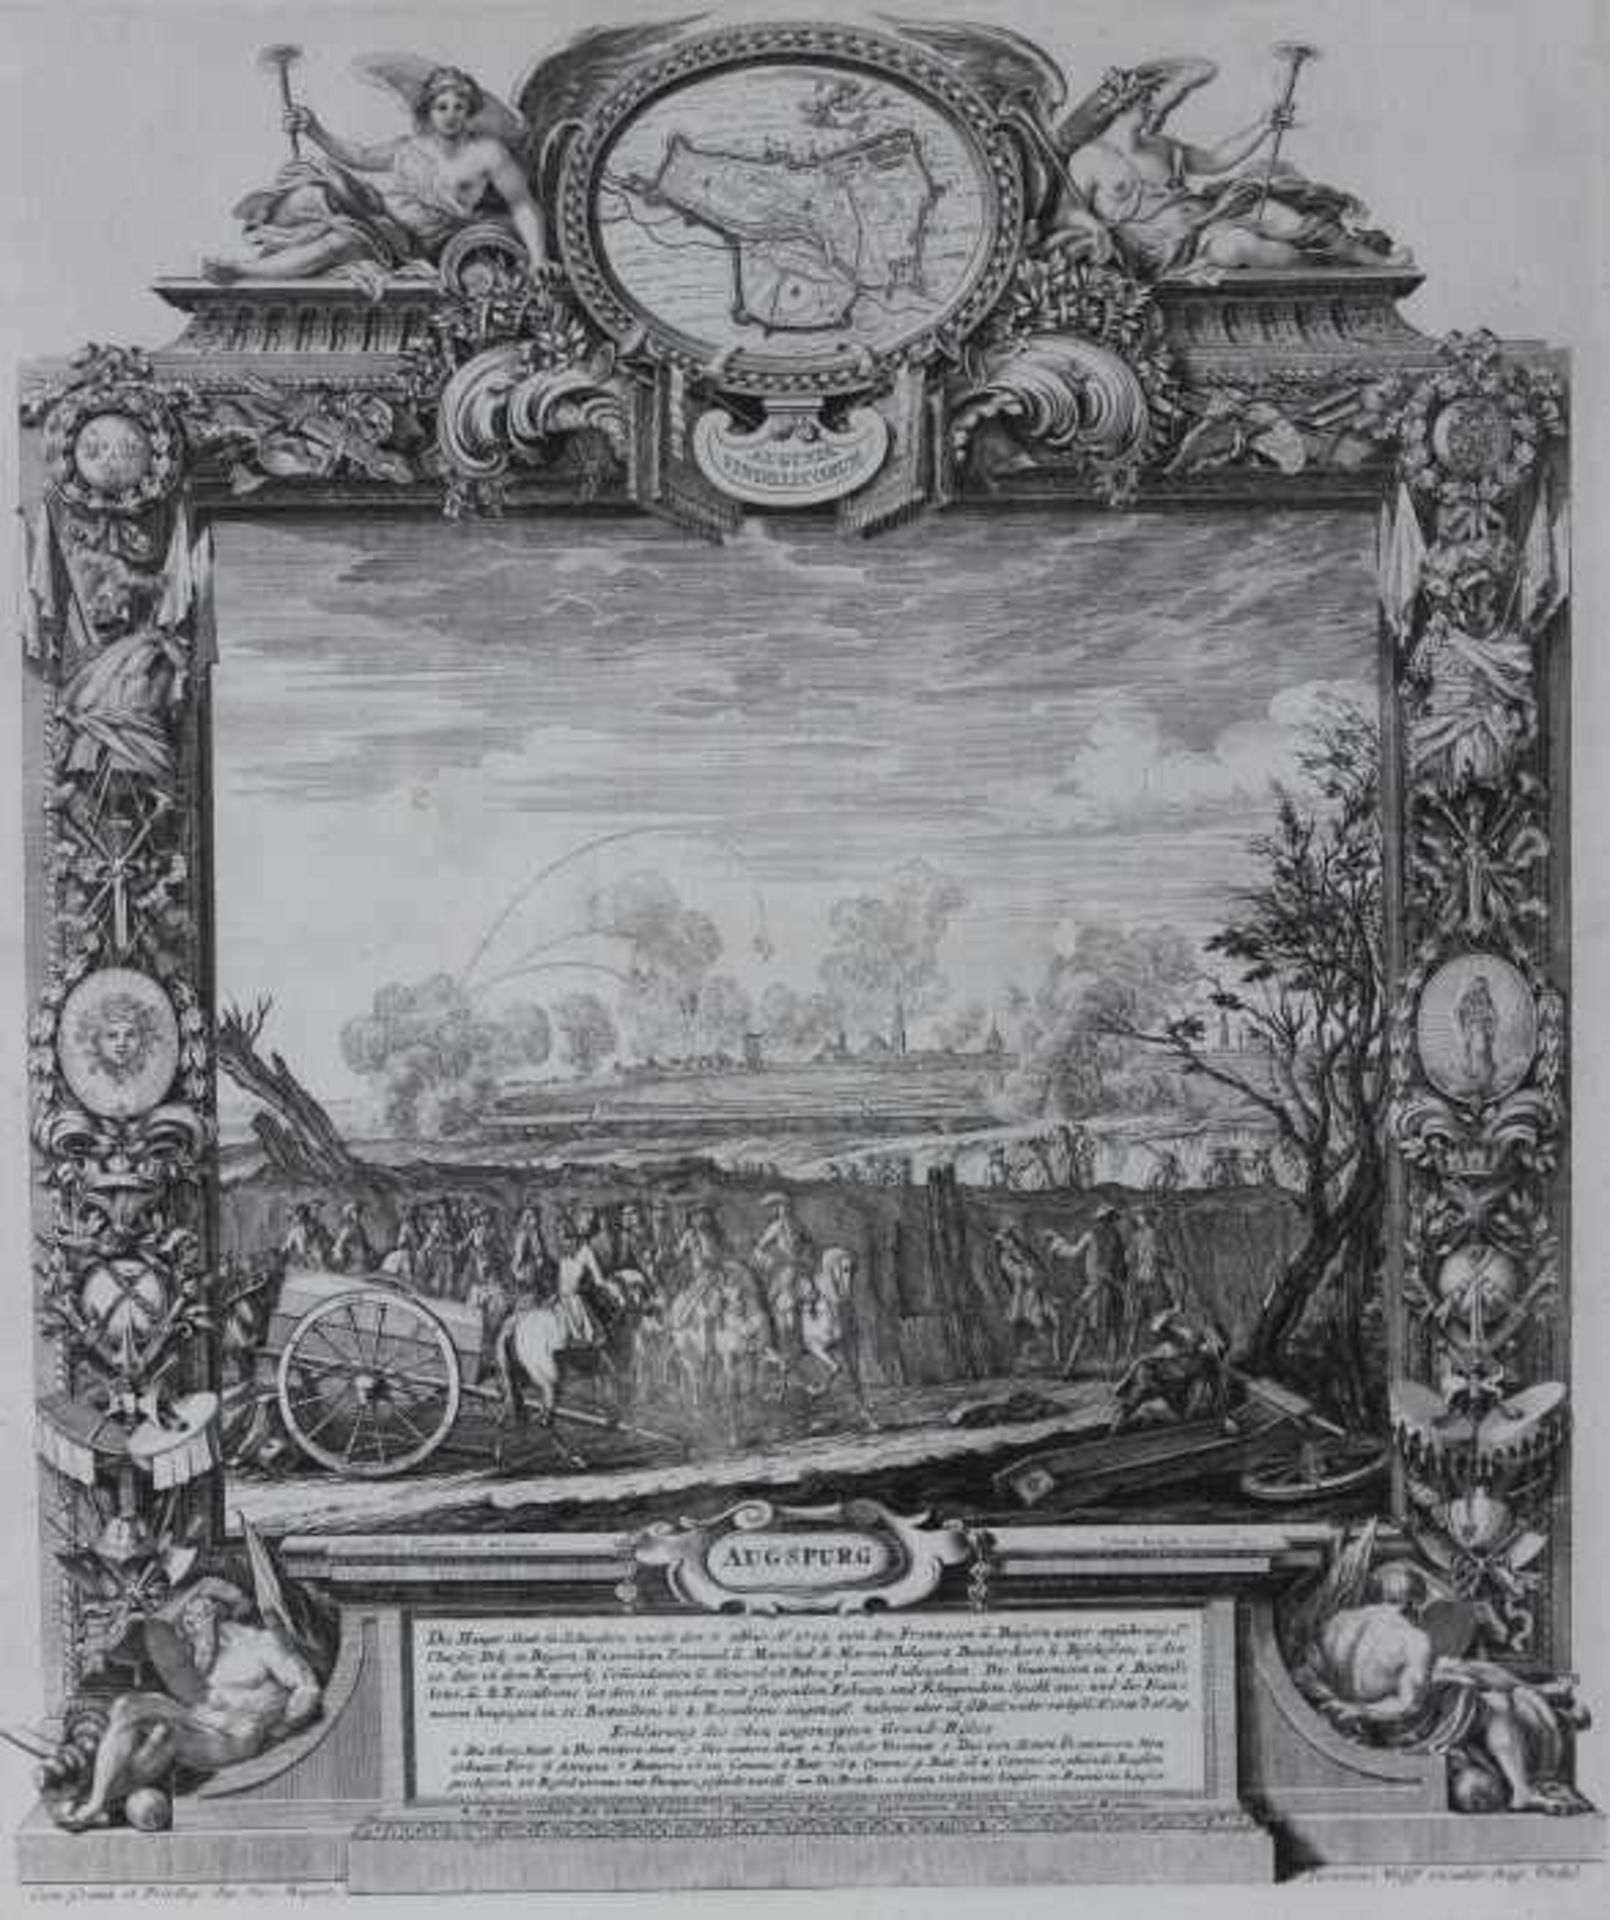 Kupferstich aus dem 18.Jahrhundert "Augsburg - Siegreiche Länder und Stätt Ernde", gestochen von